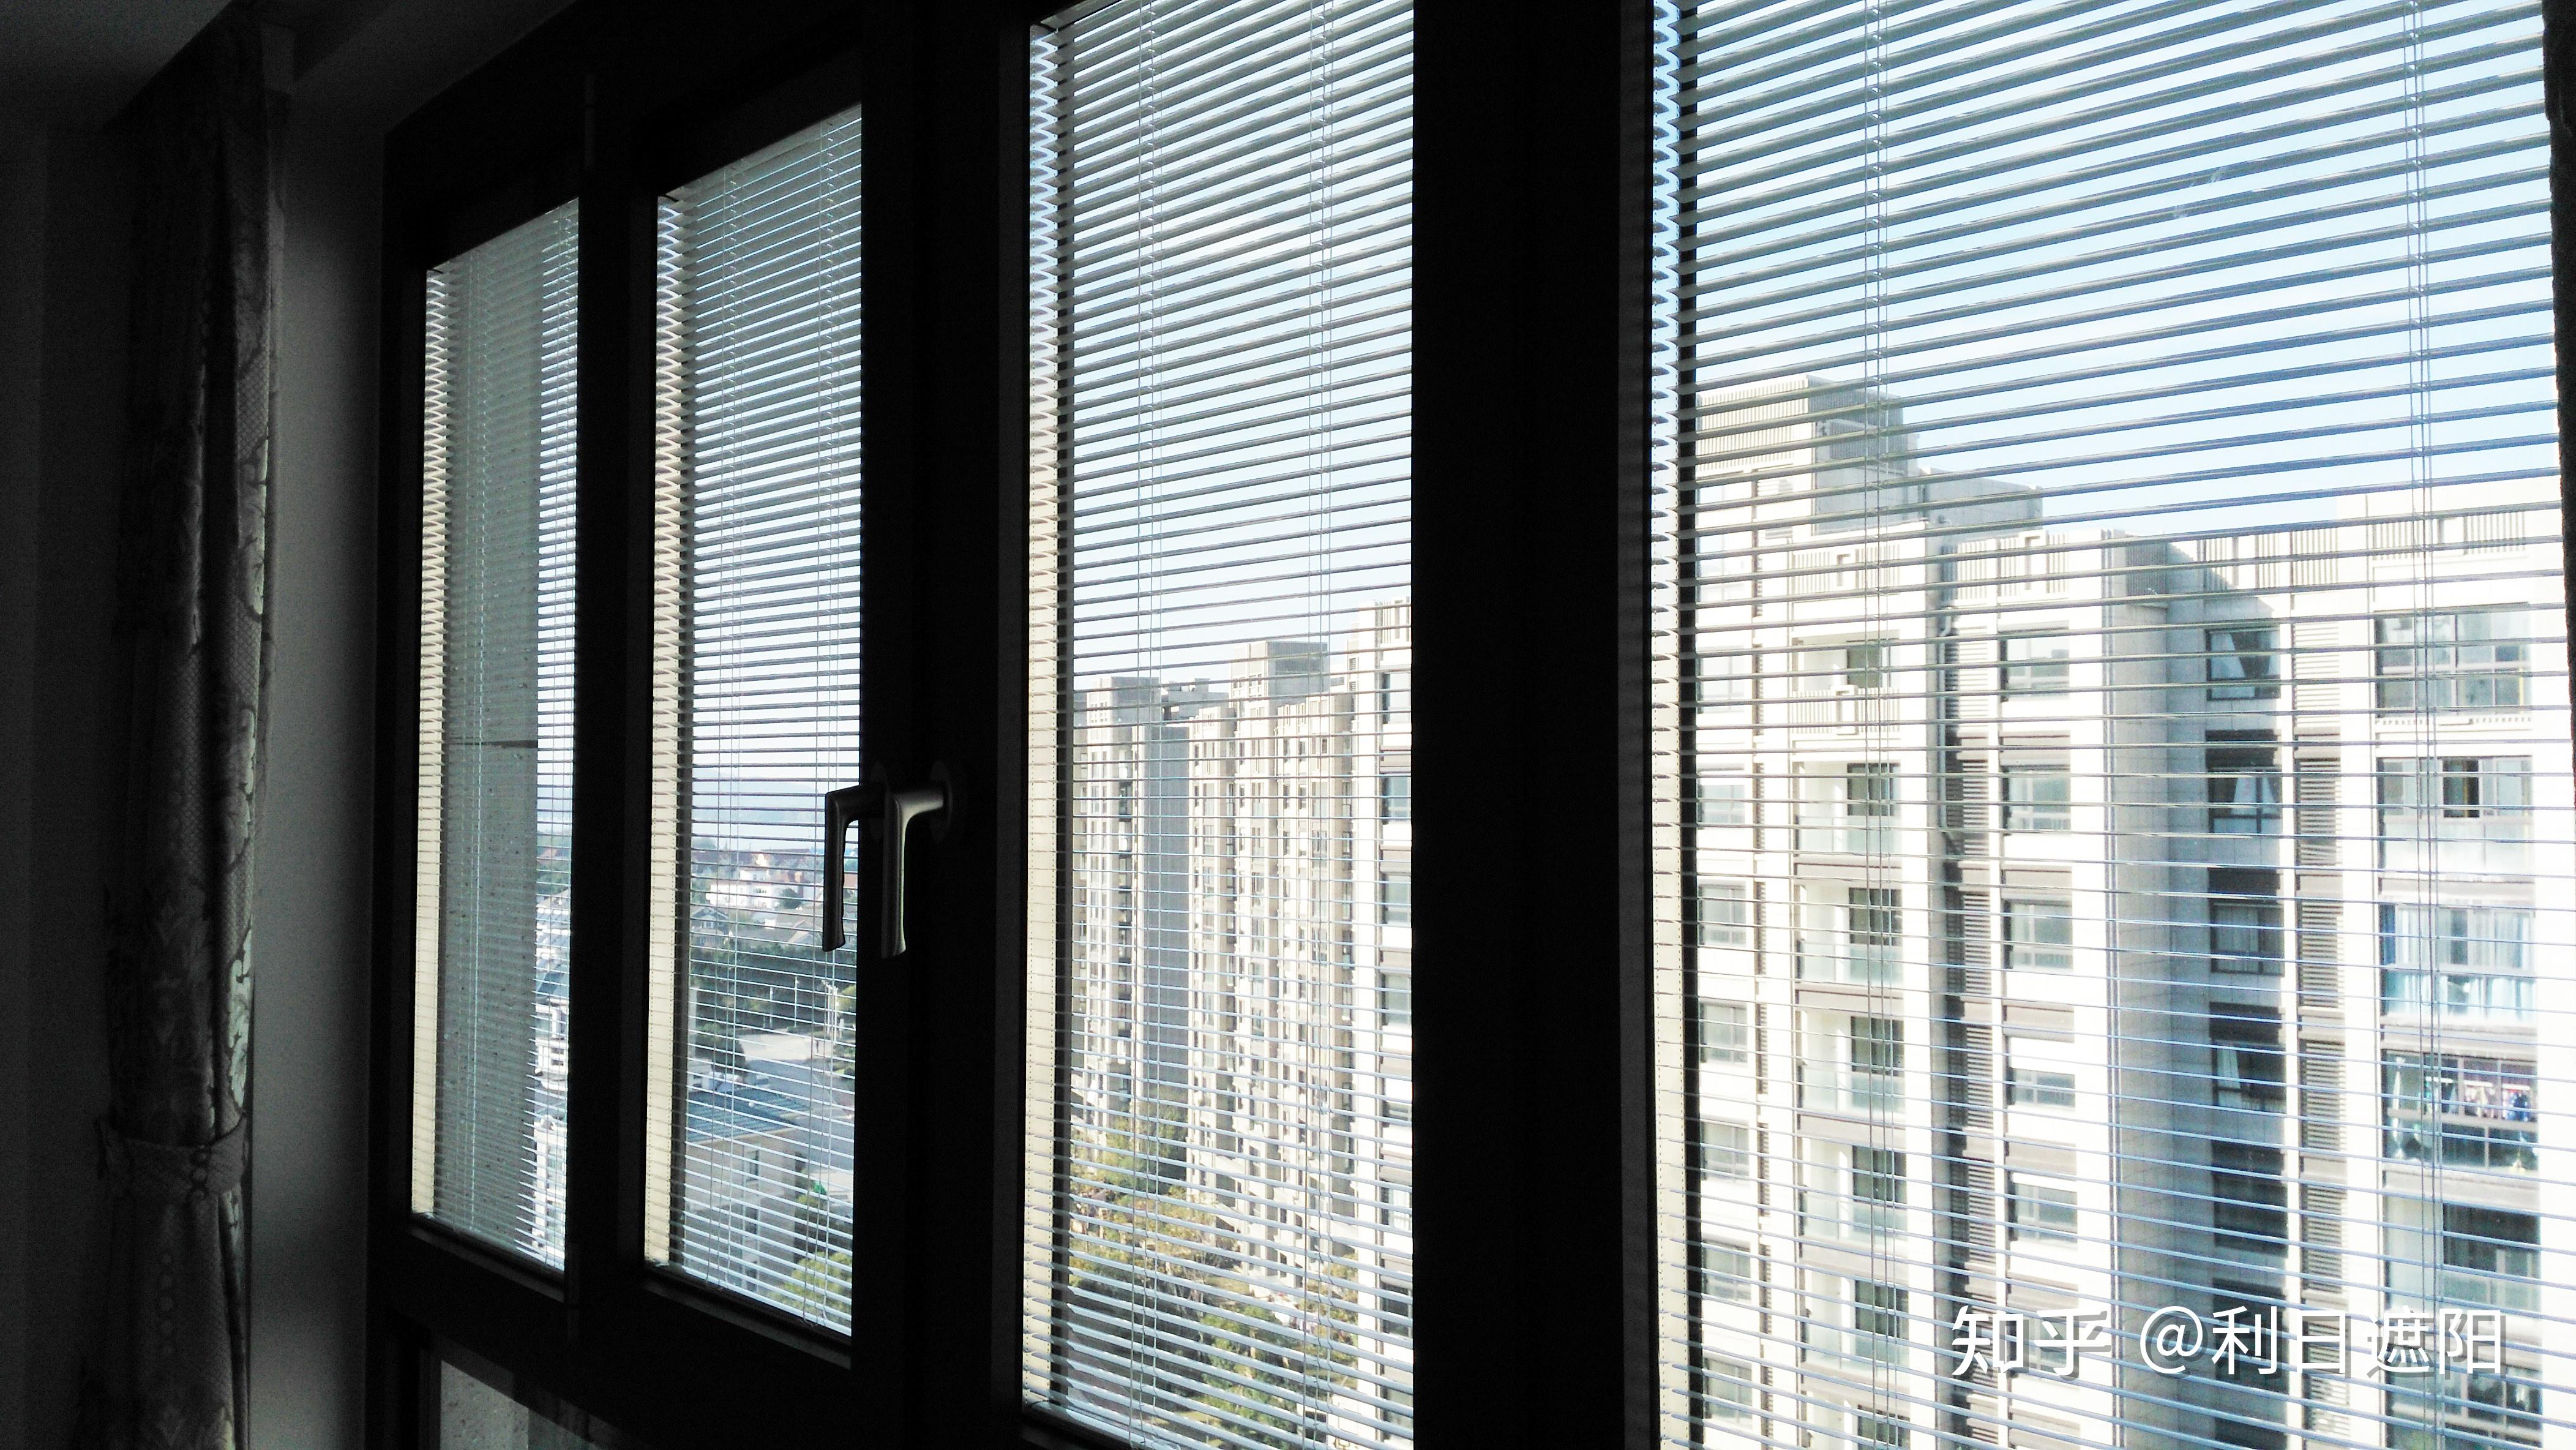 中空百叶玻璃窗采用人工或,电动机驱动的方法来开启或关闭.